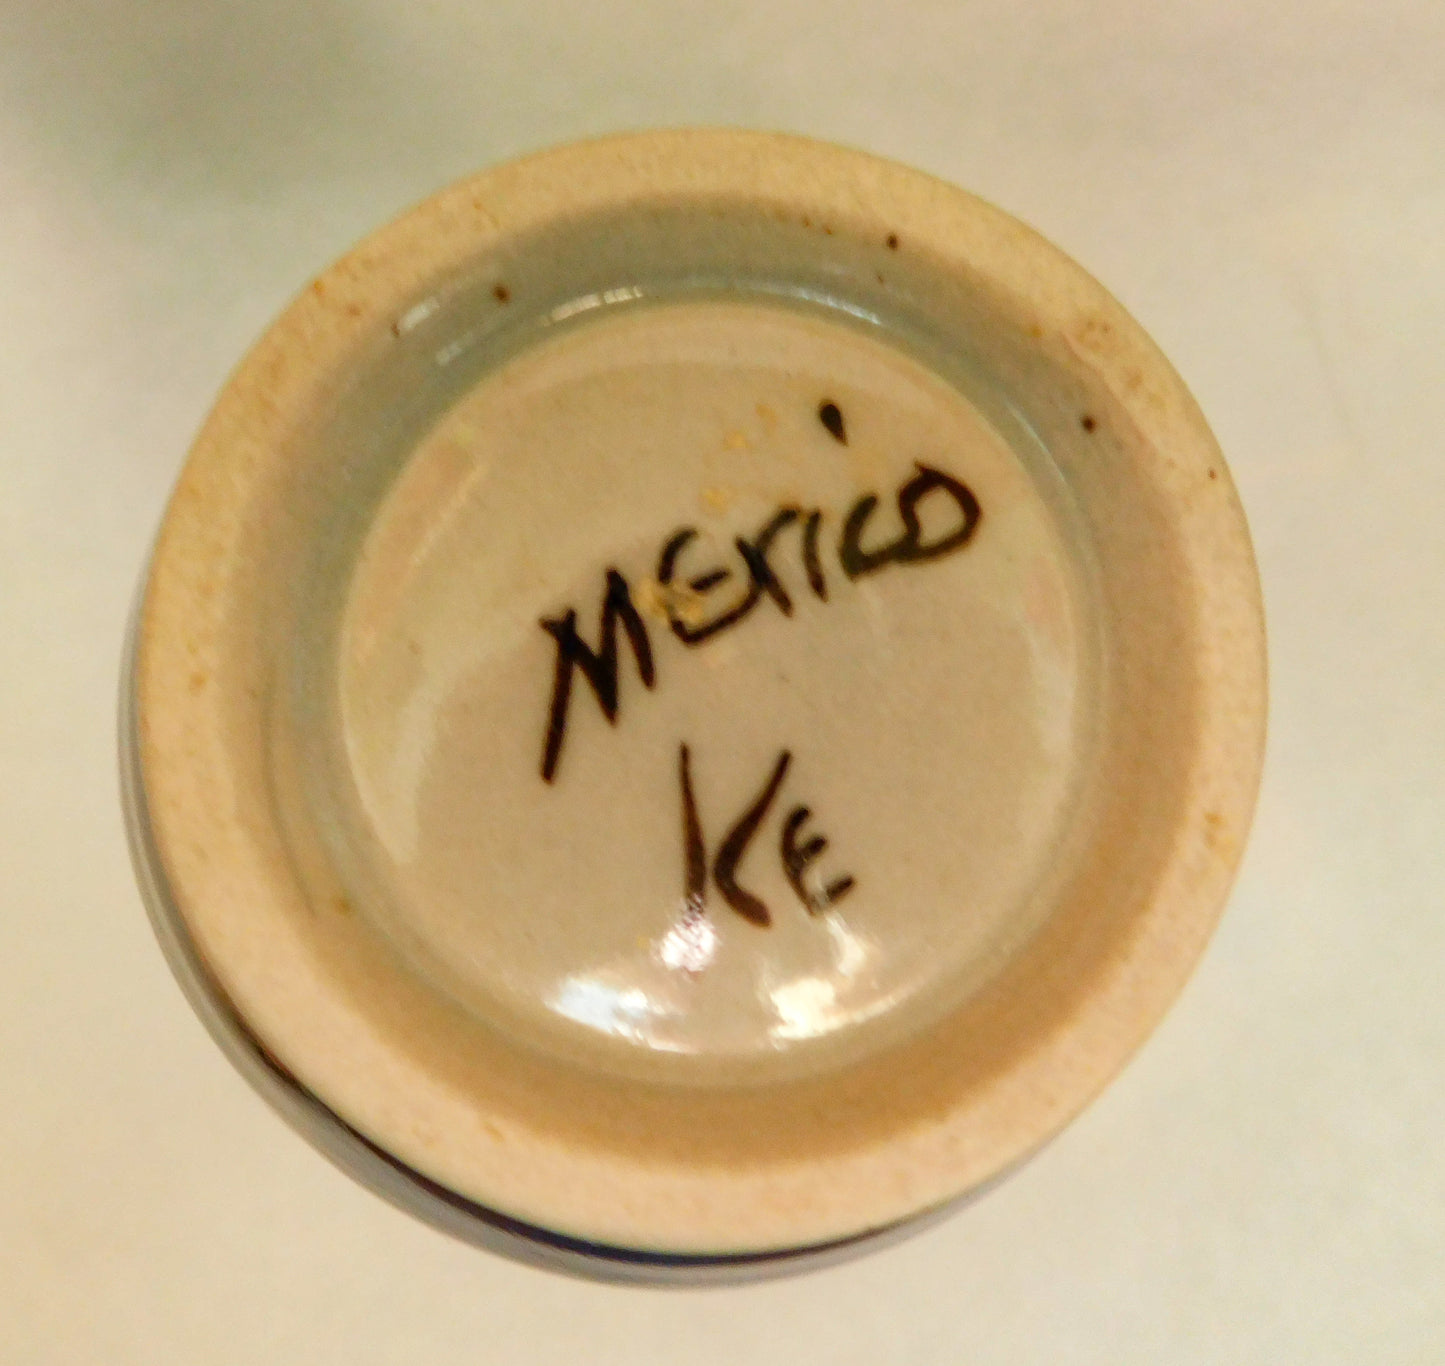 Ken Edwards Mexico Vintage Handmade Vase Collectible. Signed KE. Mint